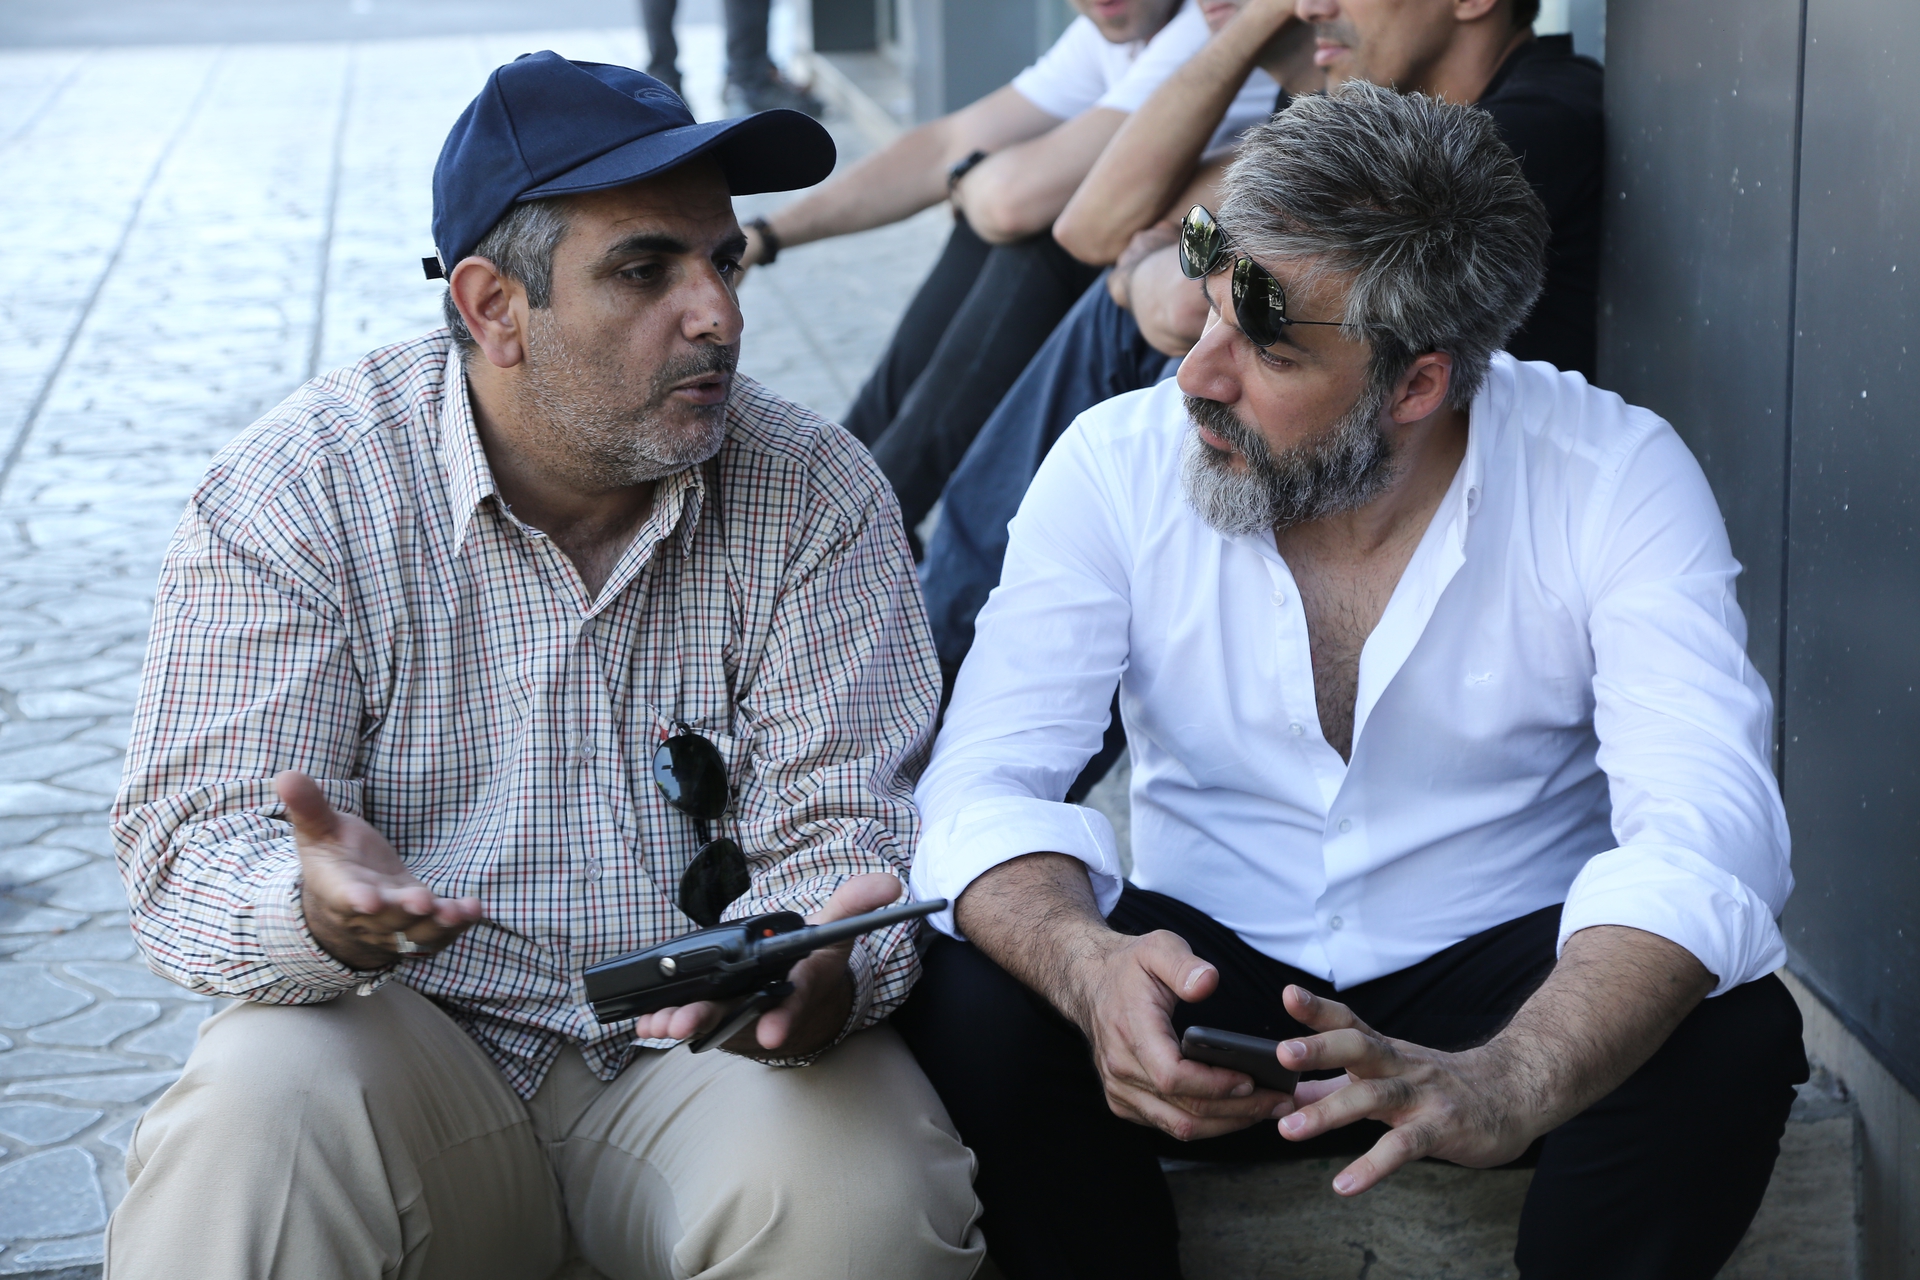 تصویری از امیر آقایی، بازیگر و نویسنده سینما و تلویزیون در حال بازیگری سر صحنه یکی از آثارش